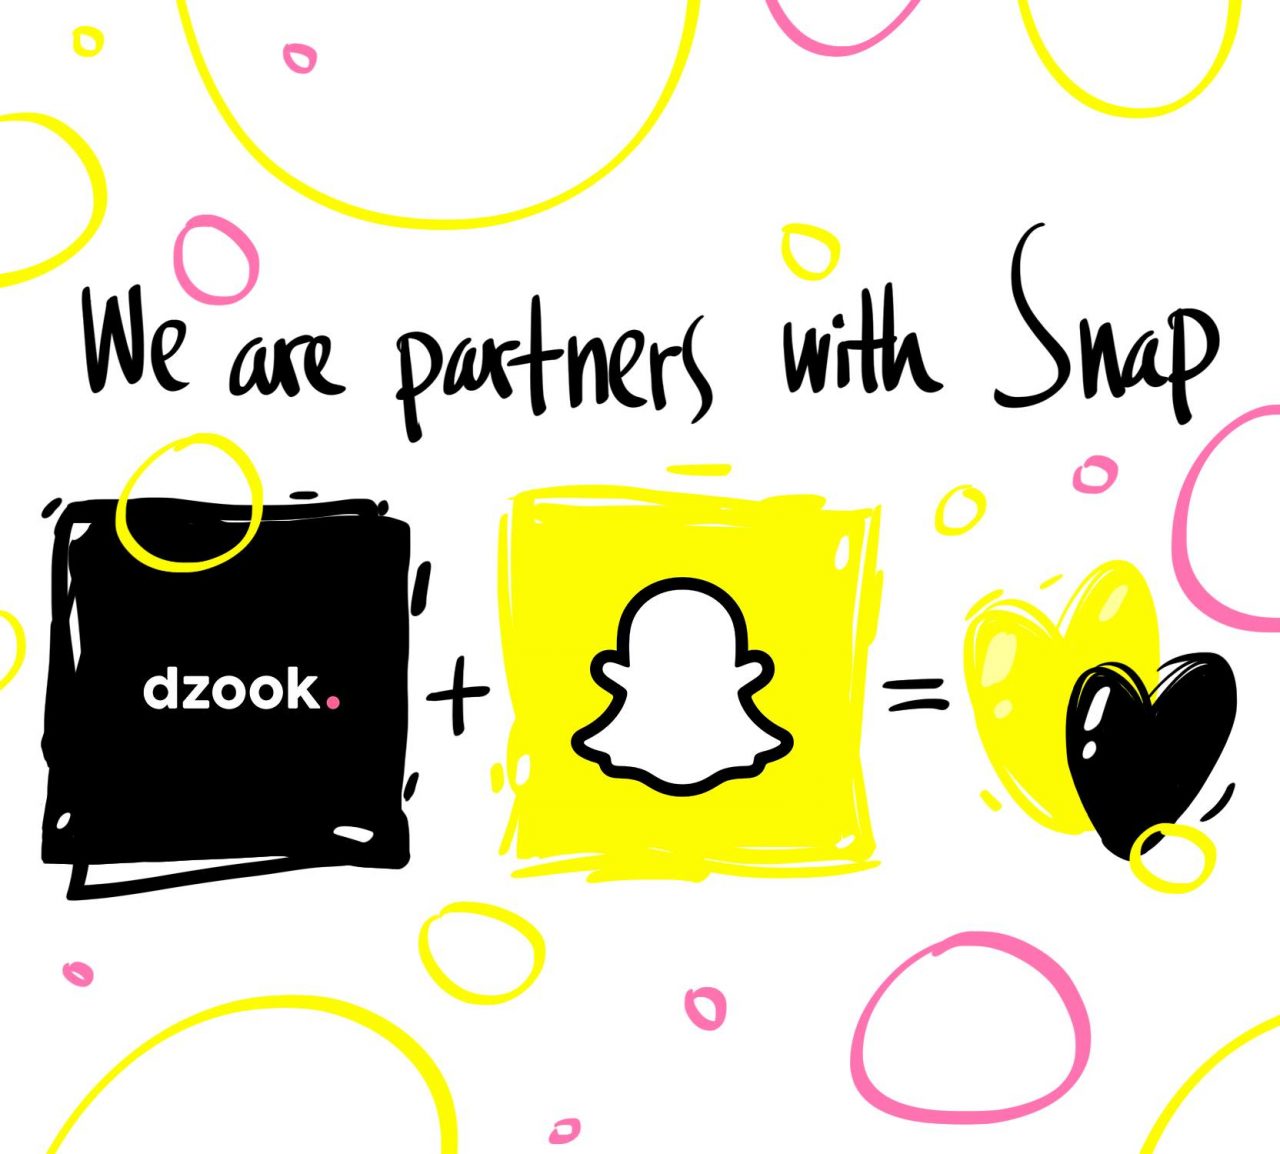 dzook-ն ու Snapchat-ը սկսել են համգործակցել. Առաջիկայում հայկական ստարտափը Snapchat-ում 3 նոր lens կթողարկի